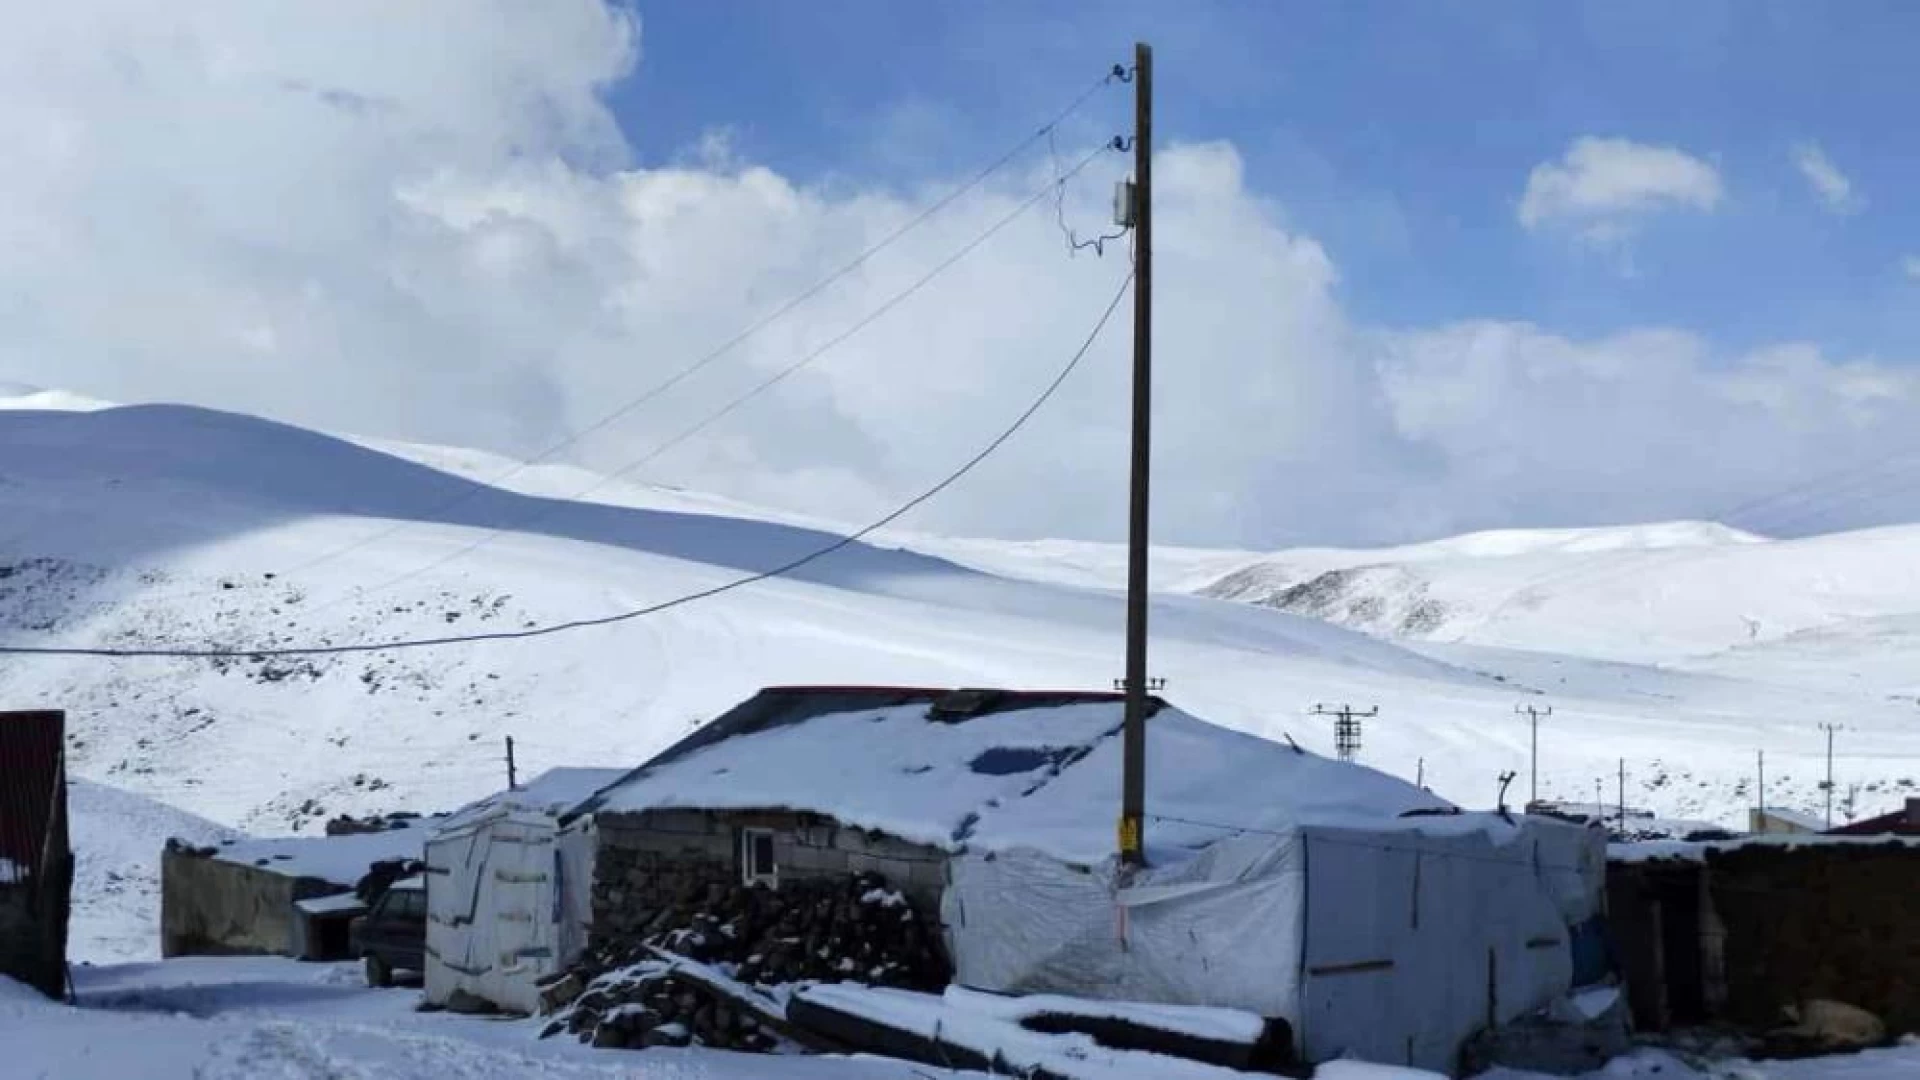 Ağrı'da kar yağışı köylüleri şaşırttı: "Batıda tatil, bizde kar" ( Video Haber )